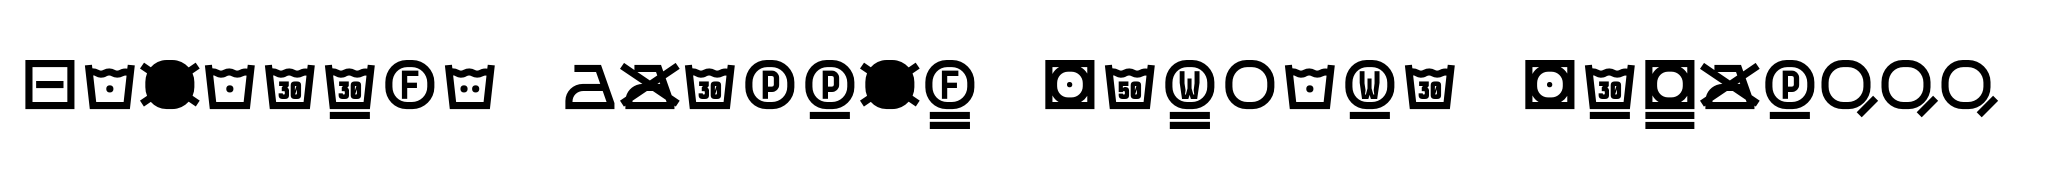 Monostep Washing Symbols Straight Regular image